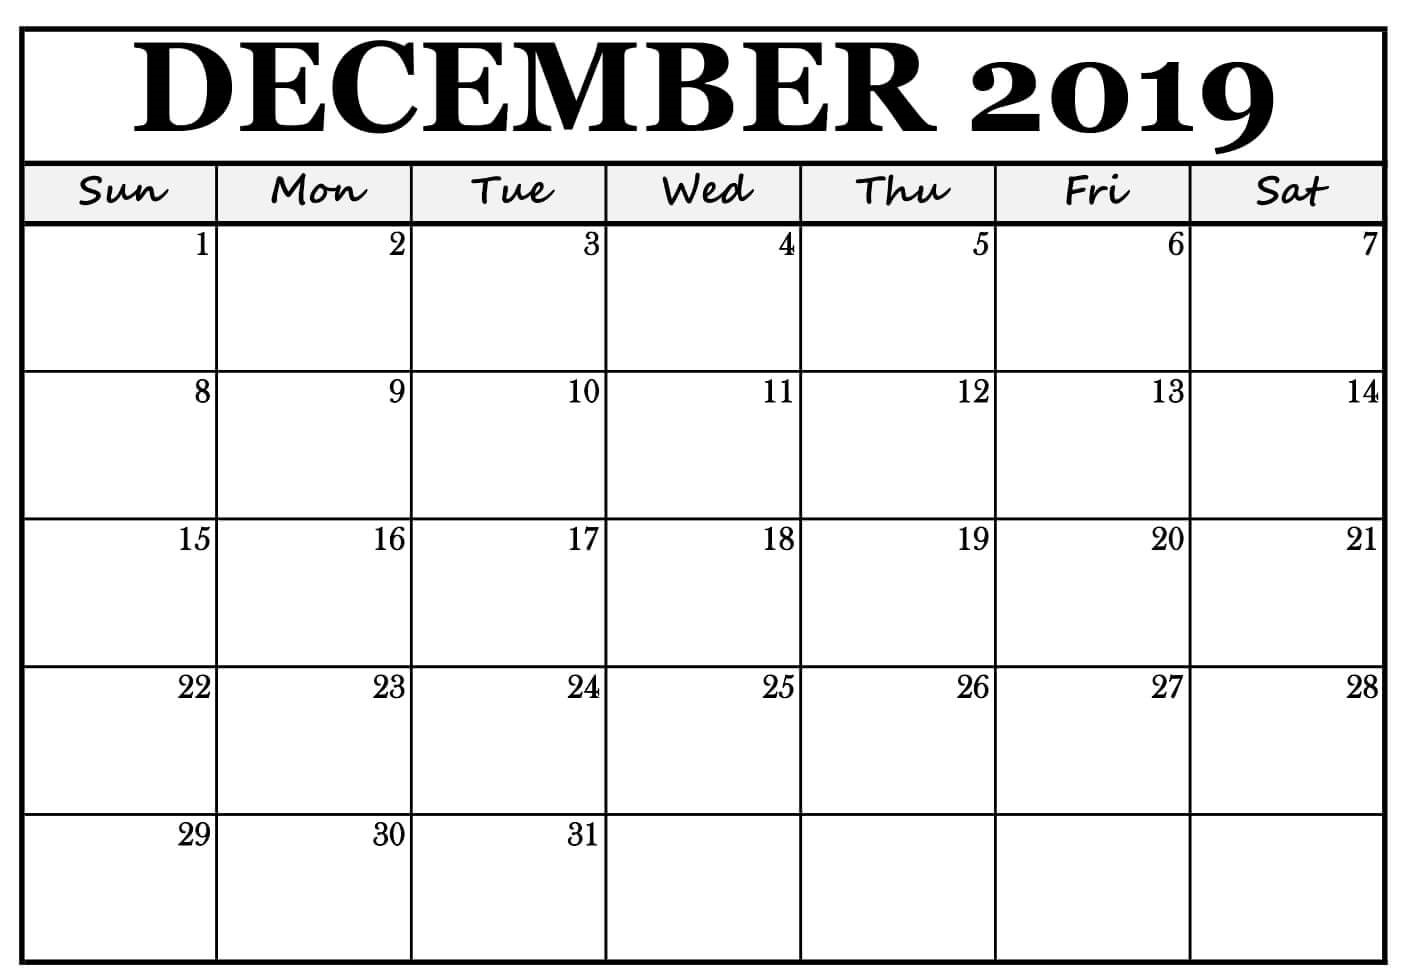 December 2019 Calendar Free Template